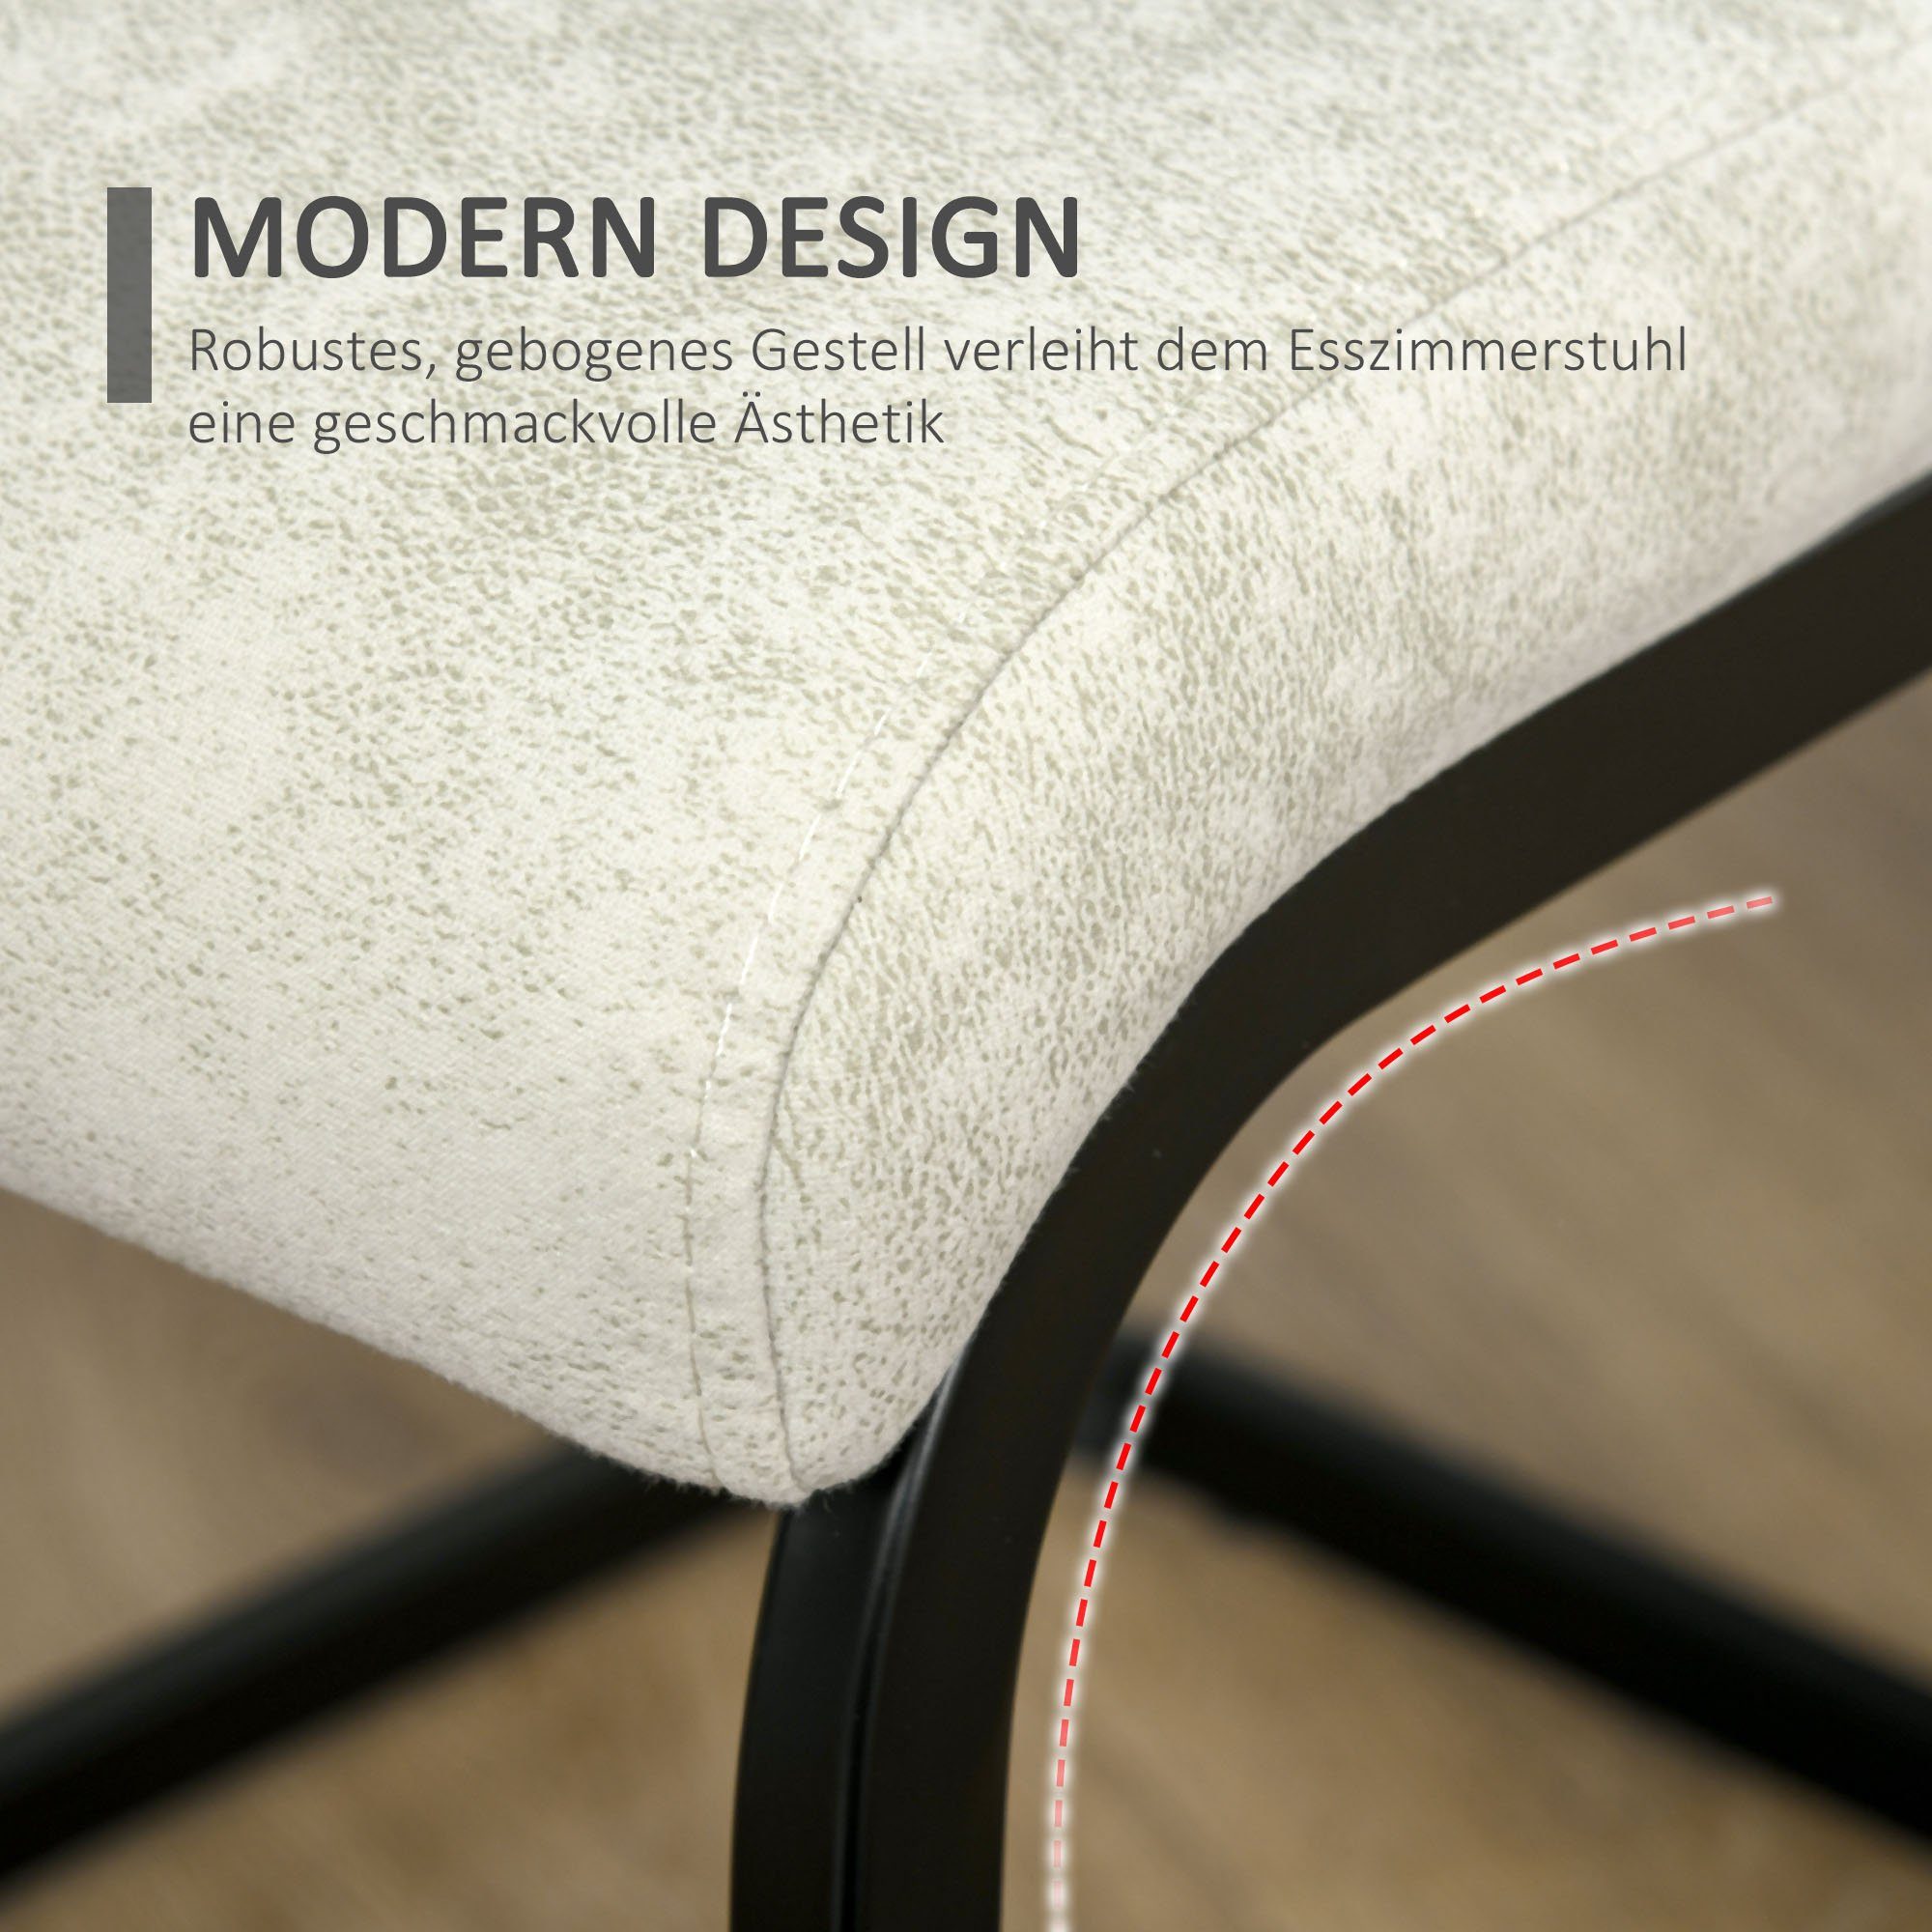 HOMCOM Esszimmerstuhl 4er-Set Esszimmerstühle, ergonomische Form Freischwinger